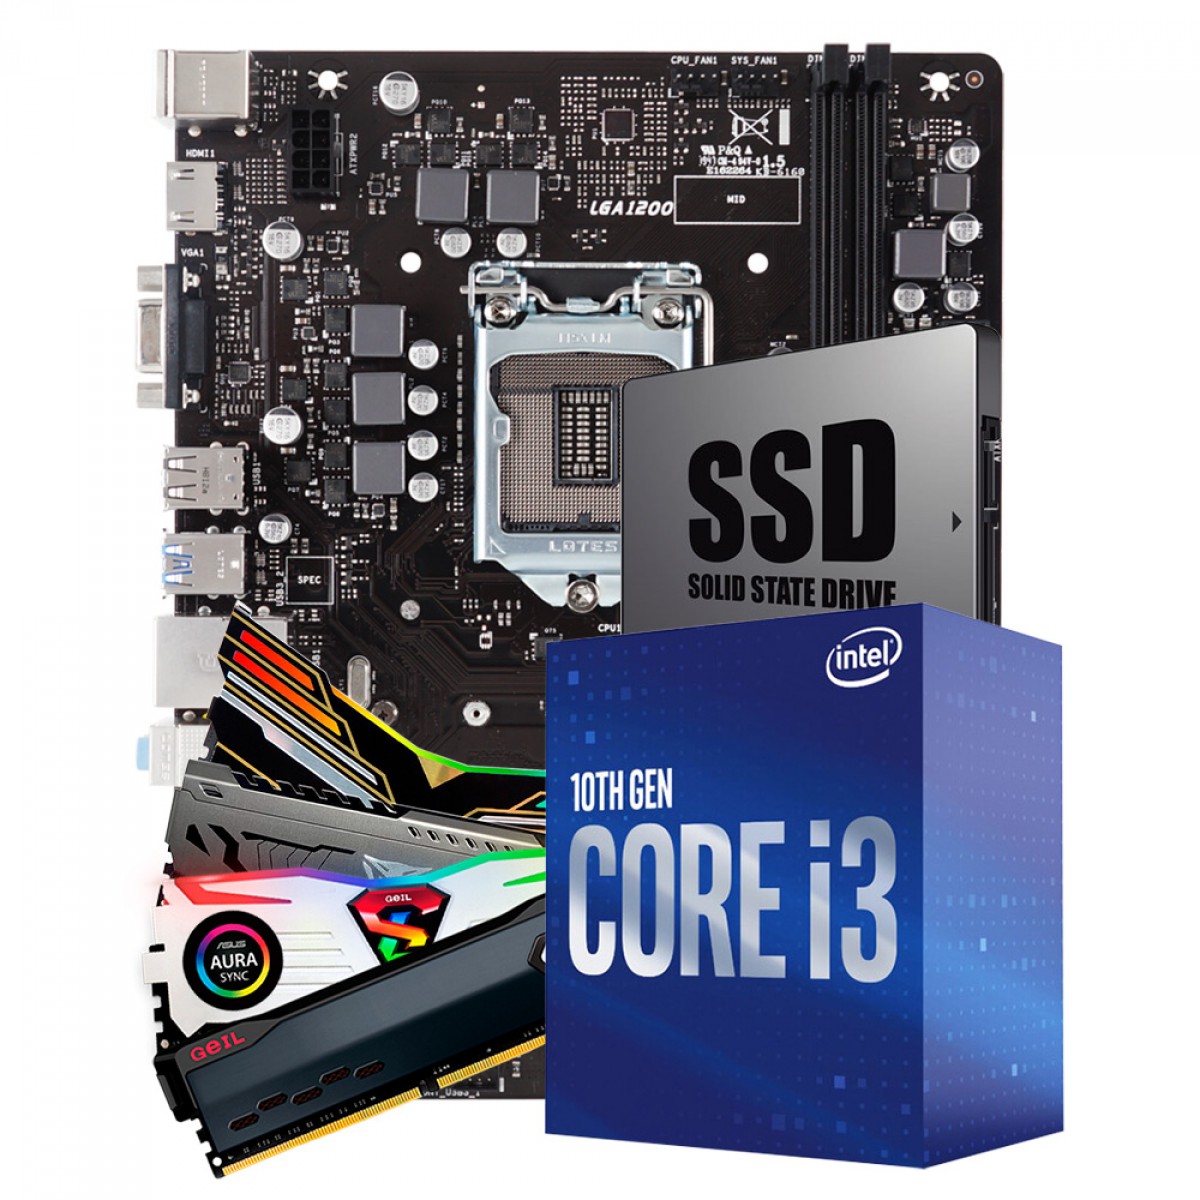 Kit Upgrade Placa Mãe H510 + Intel Core i3 10105F + Memória DDR4 8GB 3000MHz + SSD 120GB